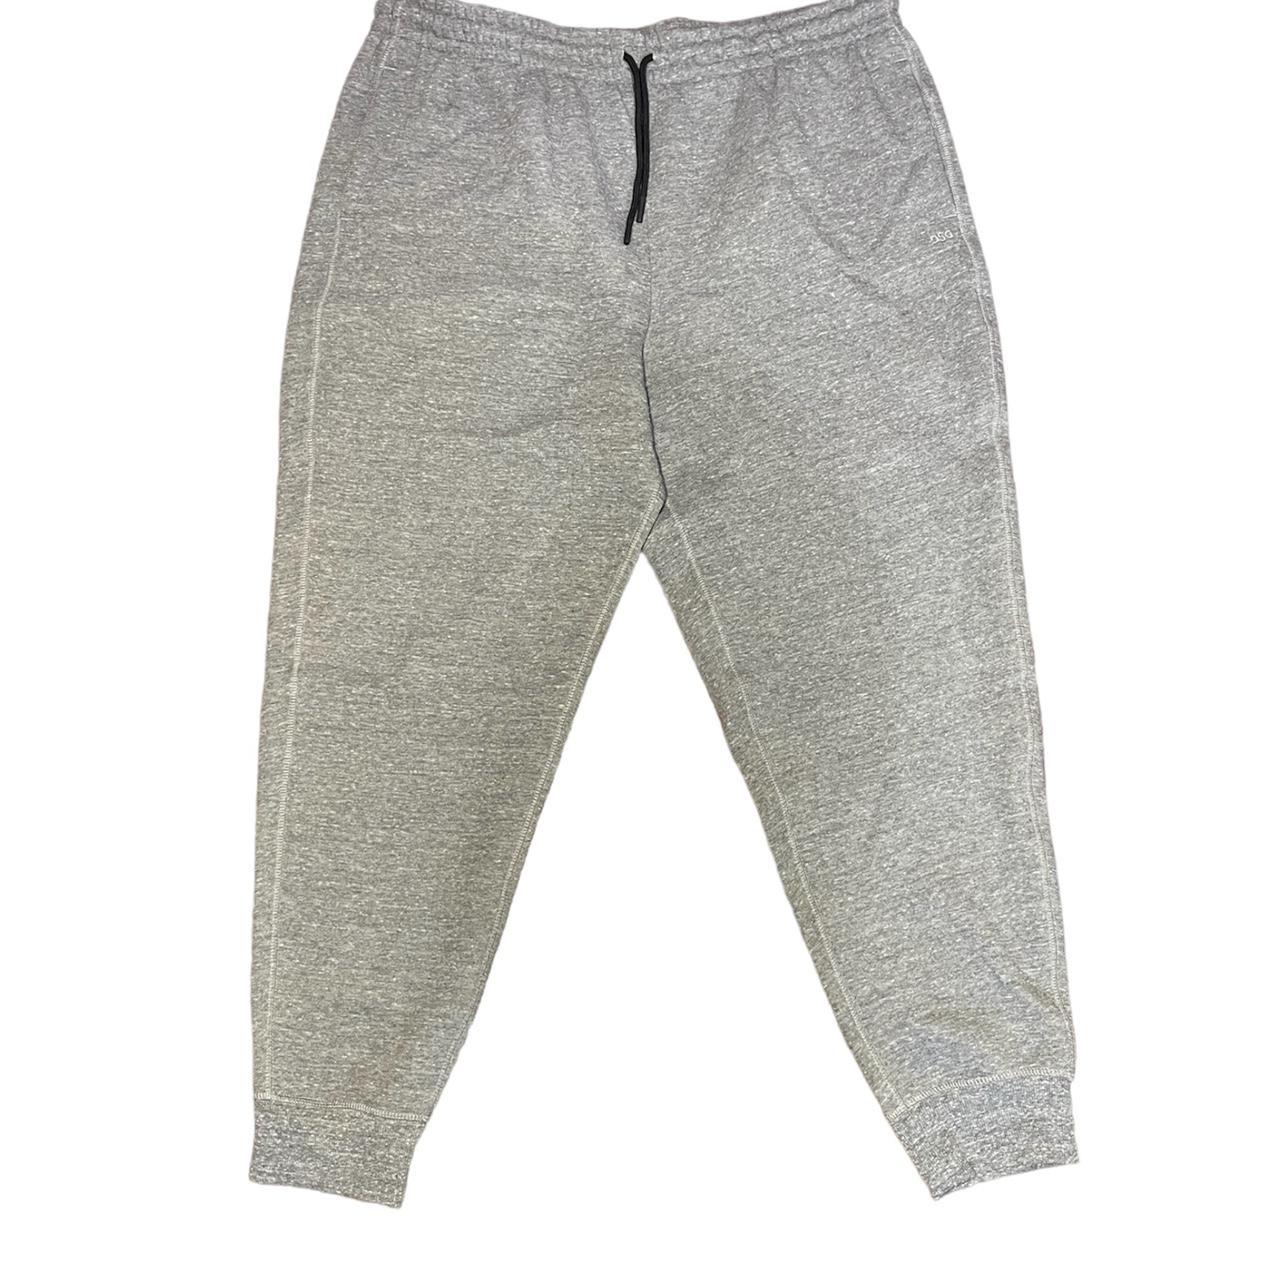 DSG mens grey sweatpants size 2XL - Depop